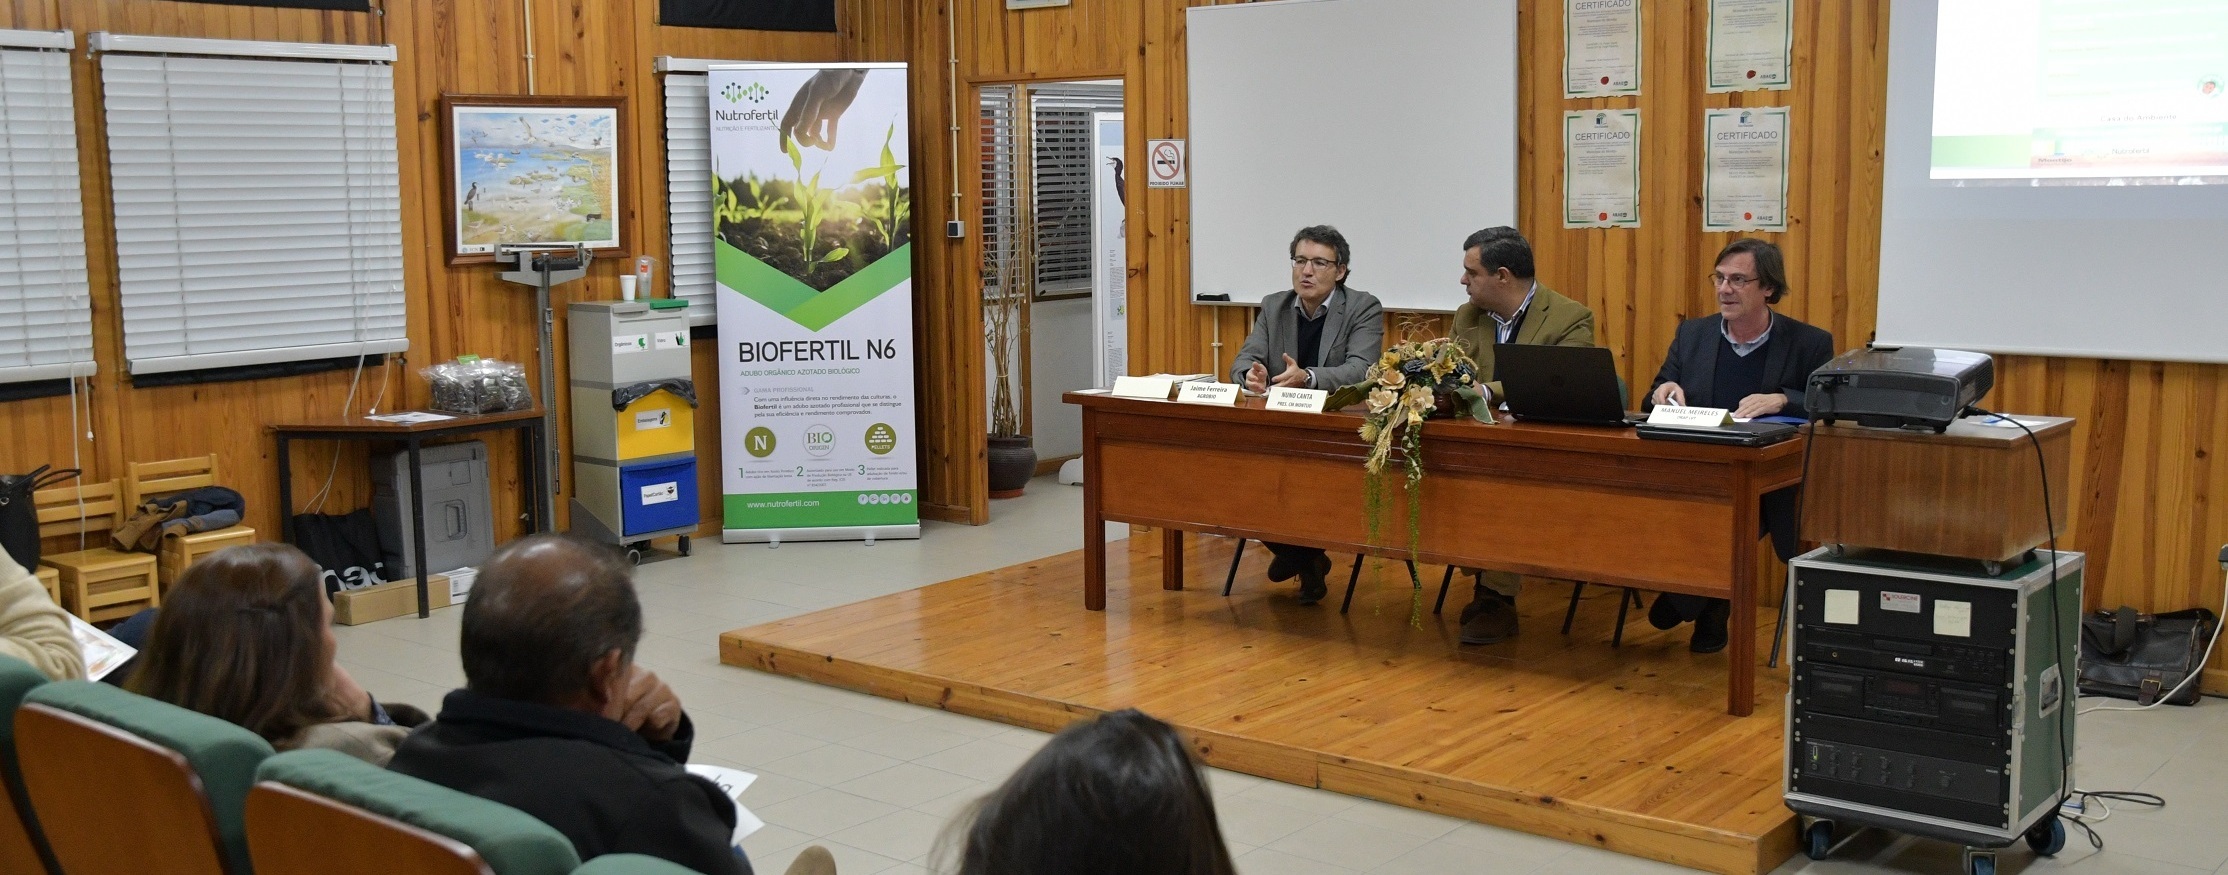 Agricultura biológica em debate na Casa do Ambiente